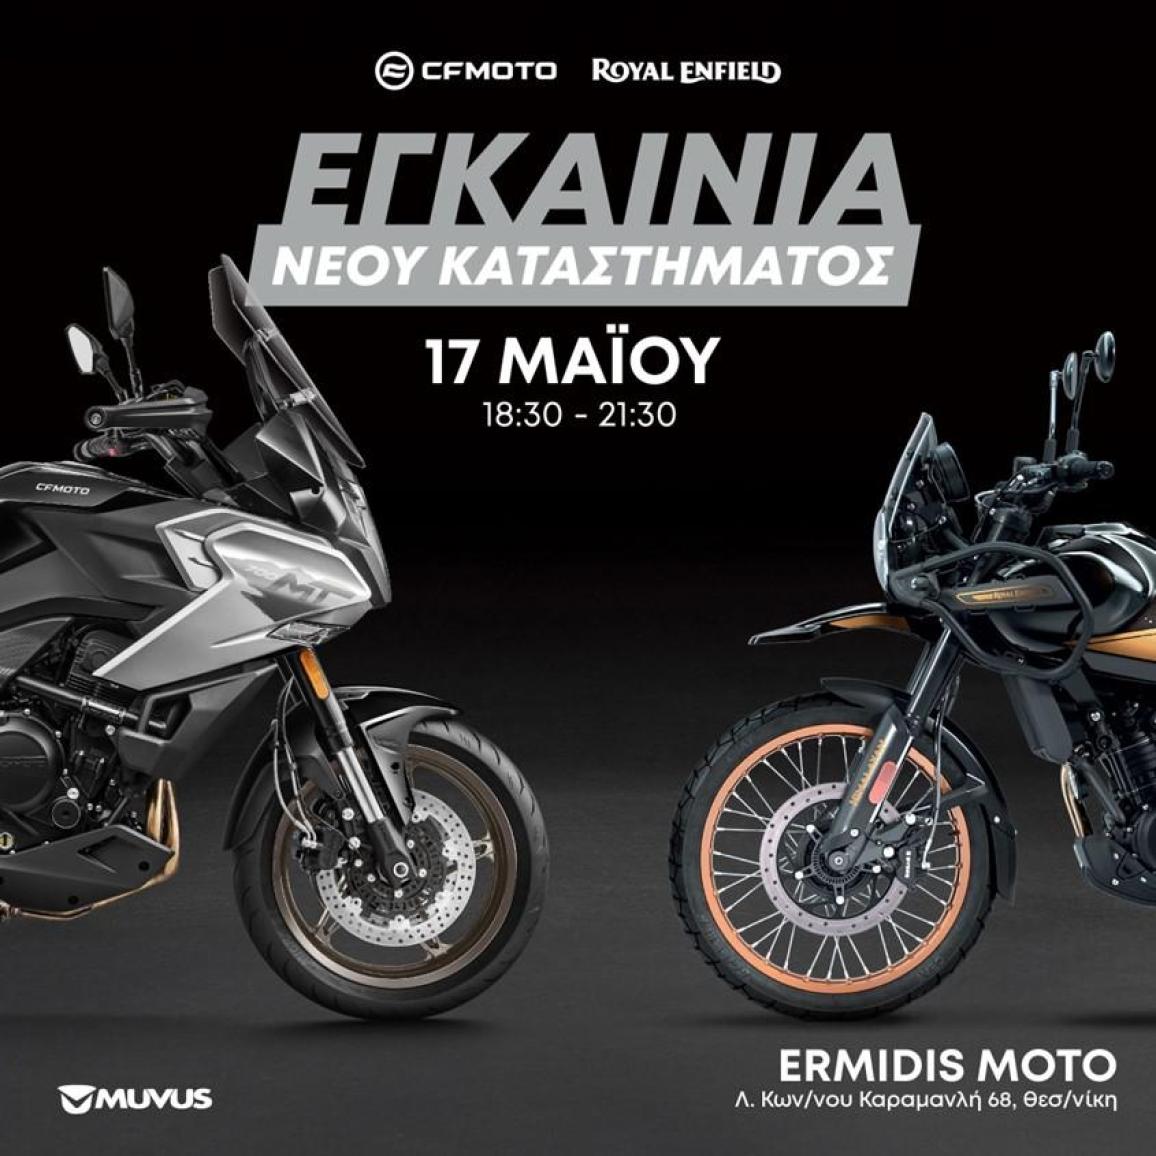 Εγκαίνια του νέου καταστήματος Ermidis Moto στην Θεσσαλονίκη στις 17 Μαΐου